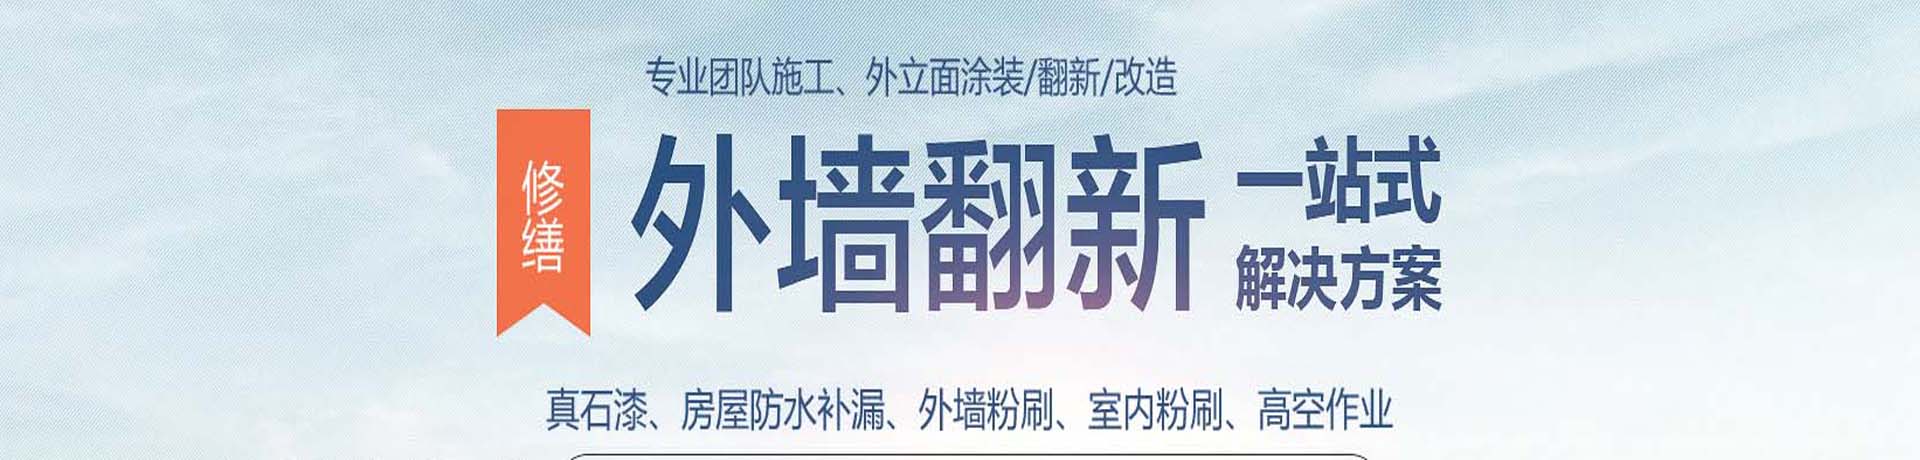 上海外墙高空涂料粉刷,外墙真石漆施工,上海外墙翻新公司,专业的墙面涂刷服务-上海物美环境工程有限公司 - 【推荐】 - 行业新闻